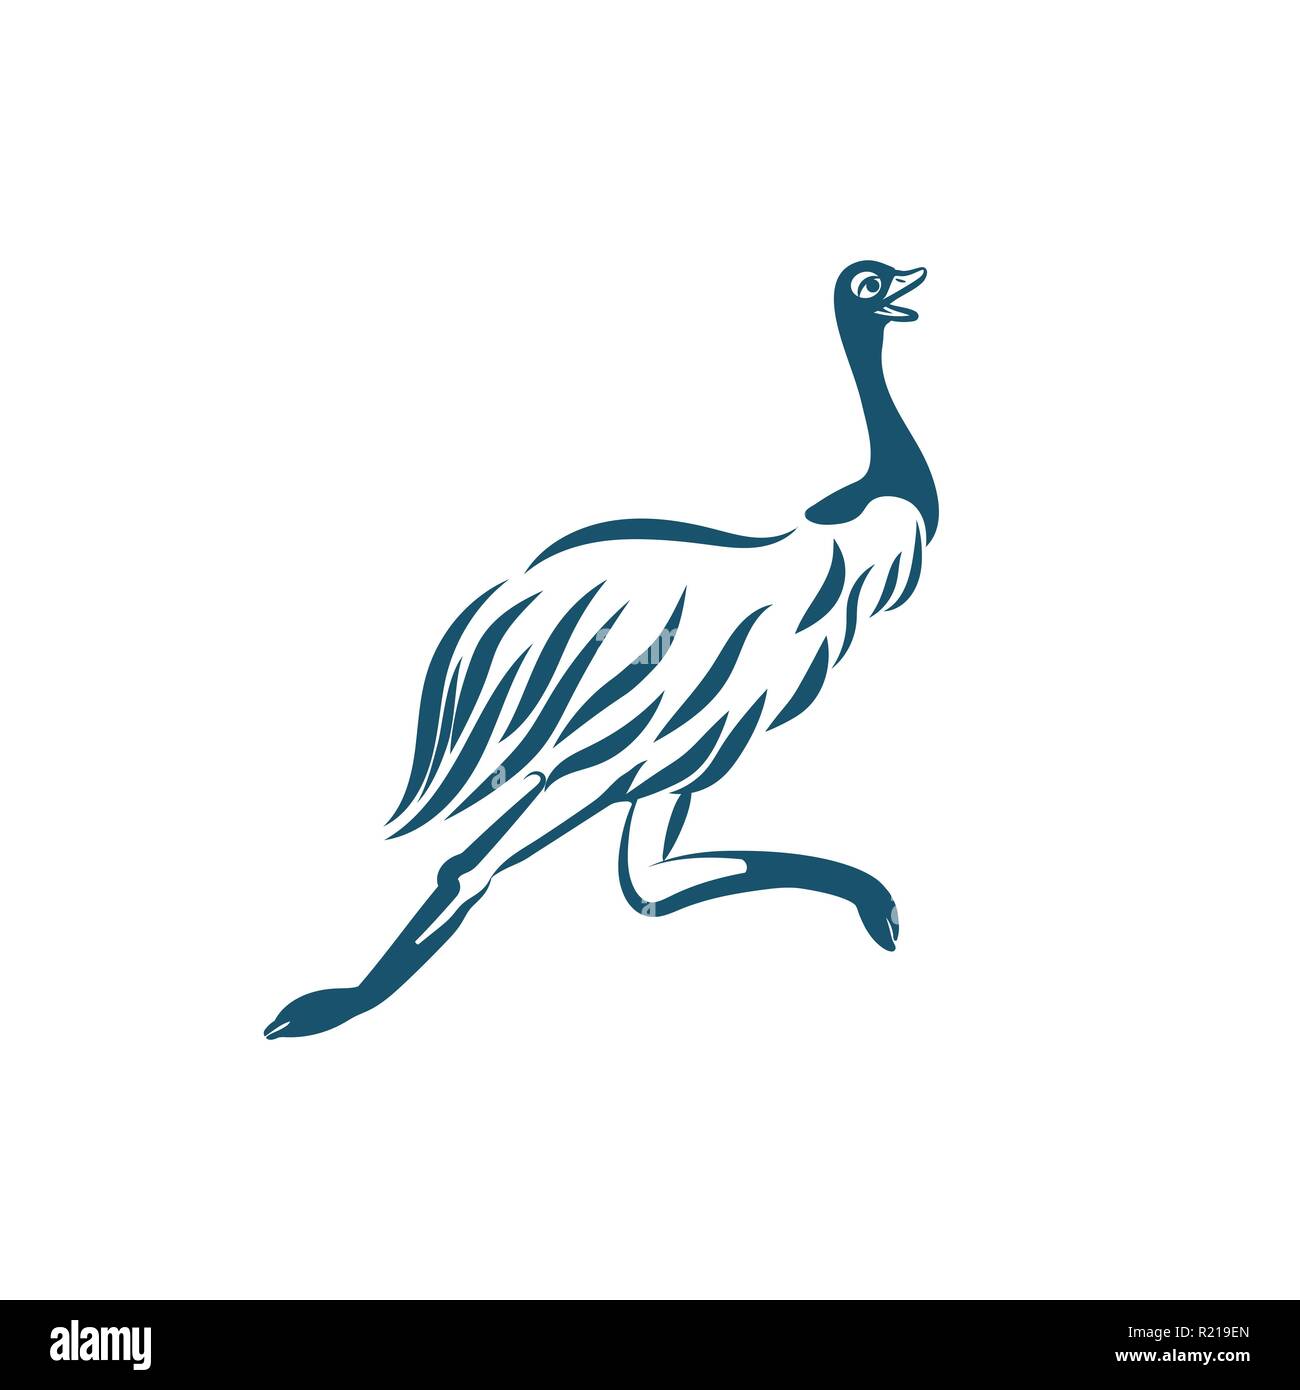 Stylized emu bird running on white background. Australian ostrich for logo design. Stock Vector